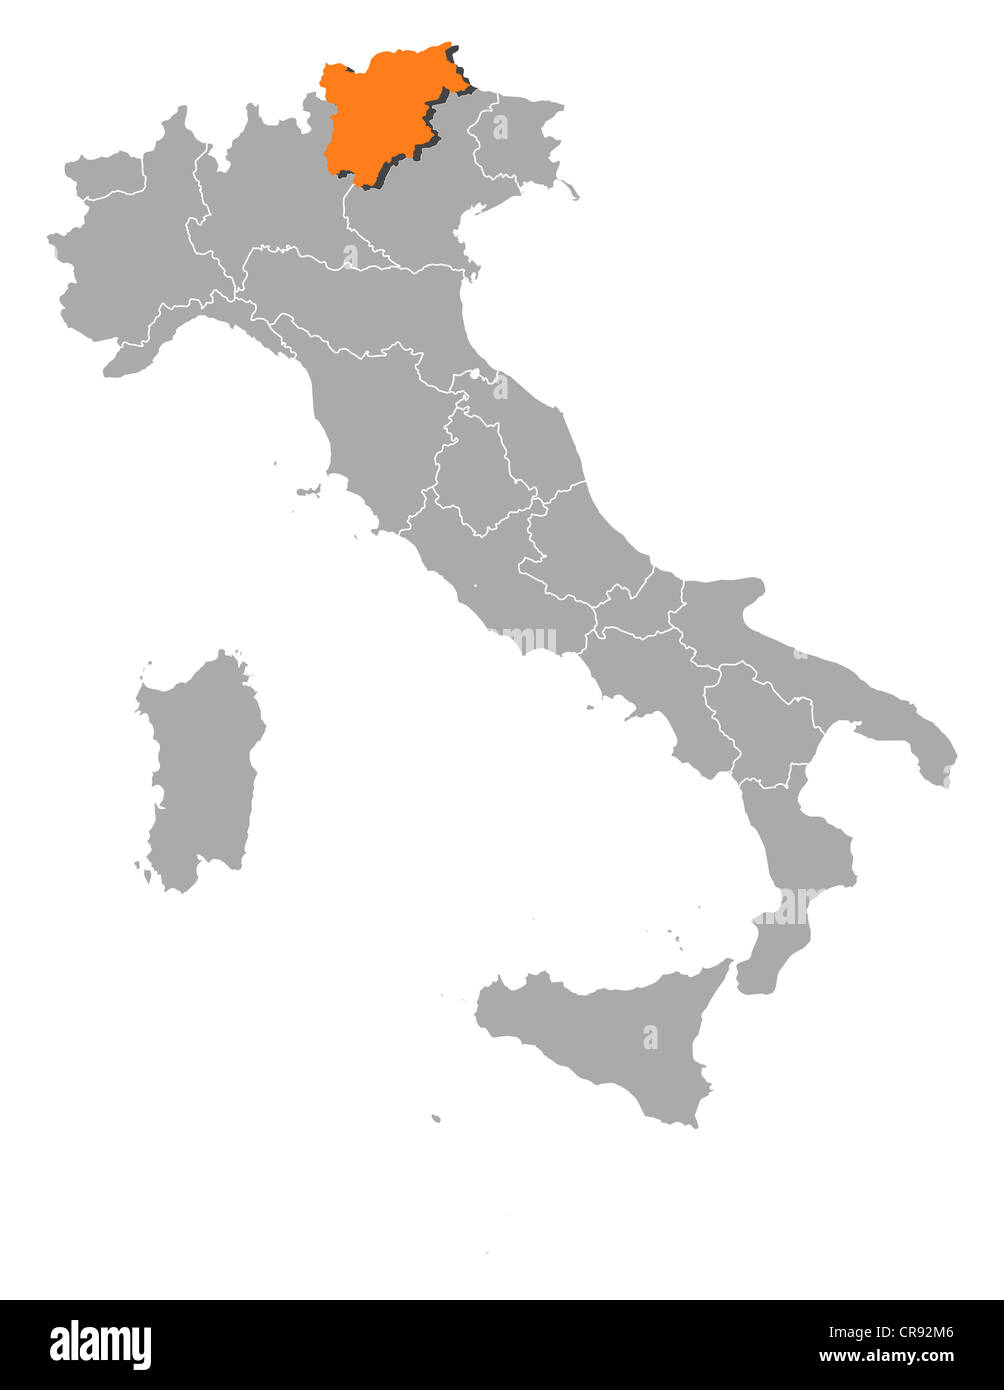 Mappa politica dell Italia con le diverse regioni dove il Trentino-Alto Adige/Südtirol è evidenziata. Foto Stock